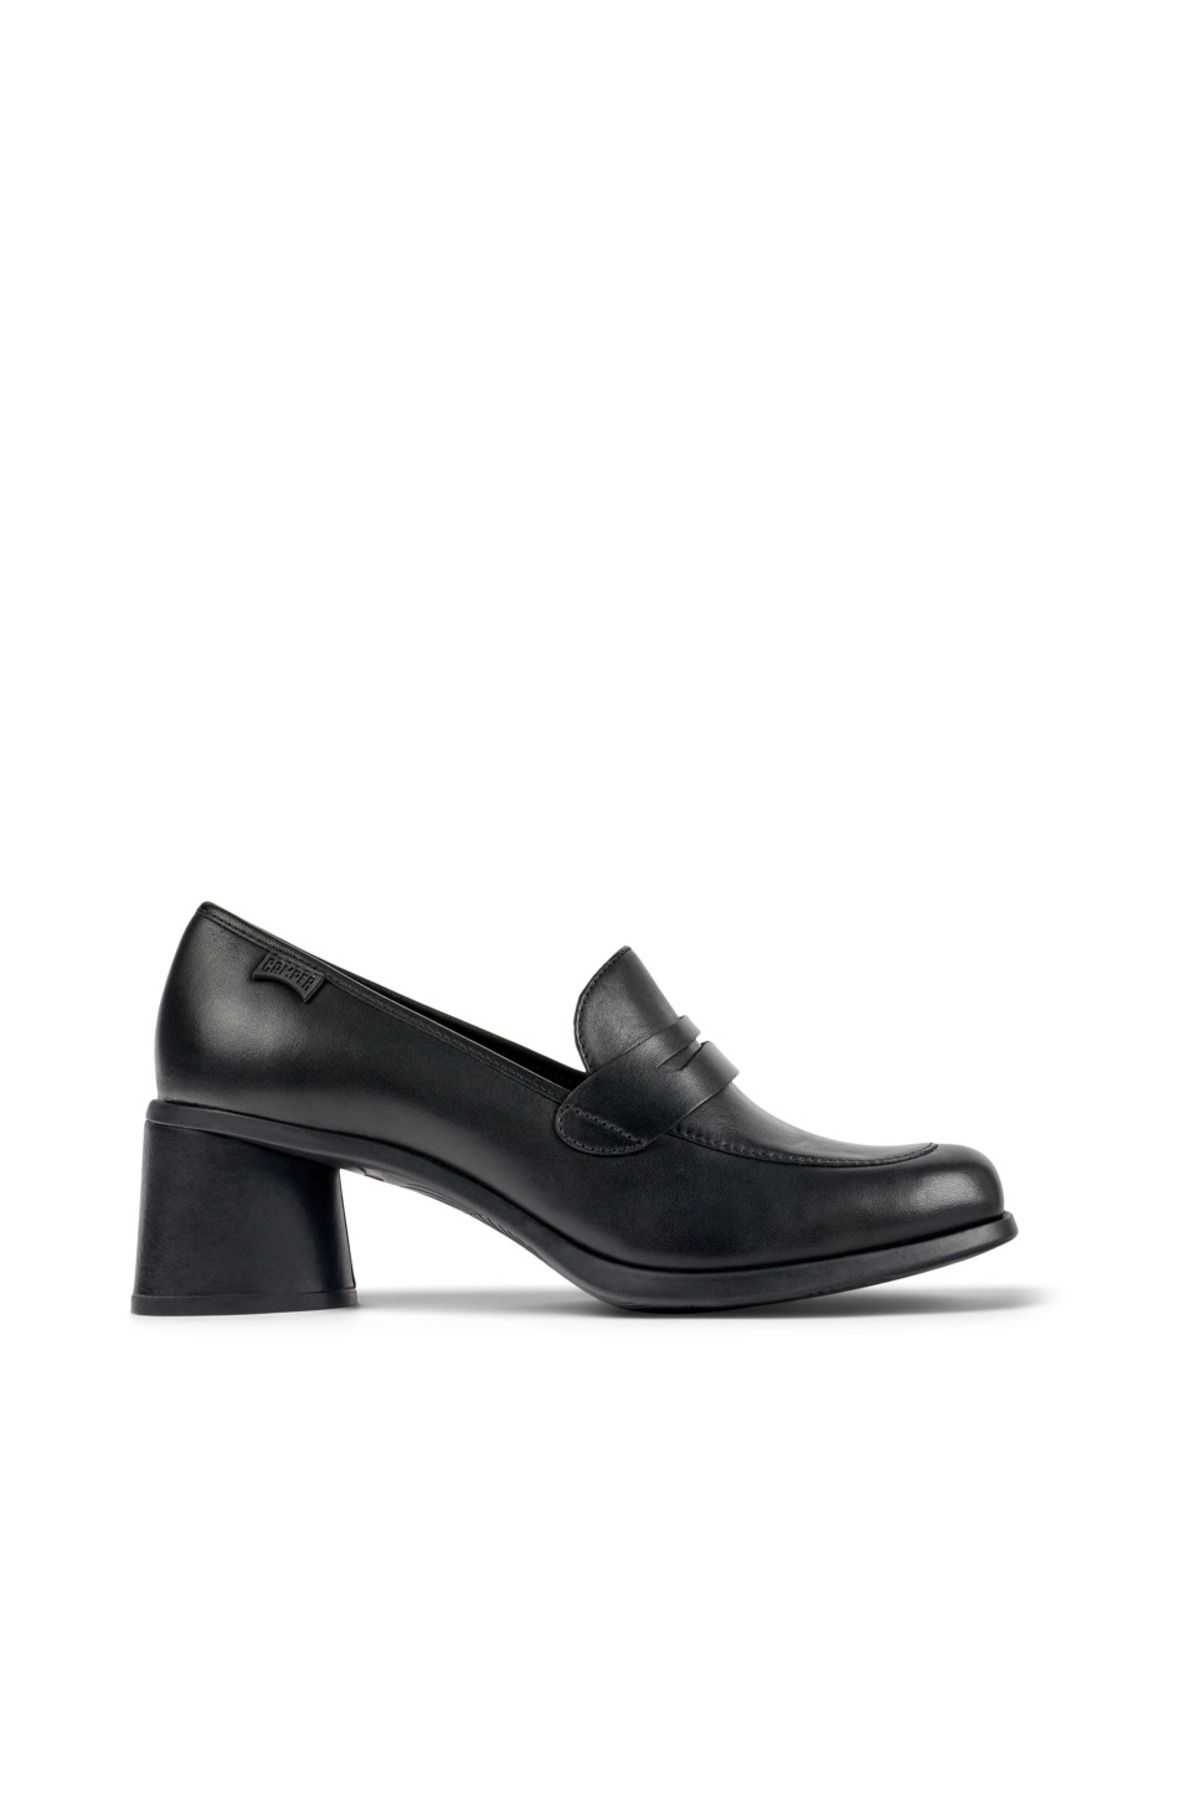 CAMPER Kadın Kia Topuklu Ayakkabı K201417-001